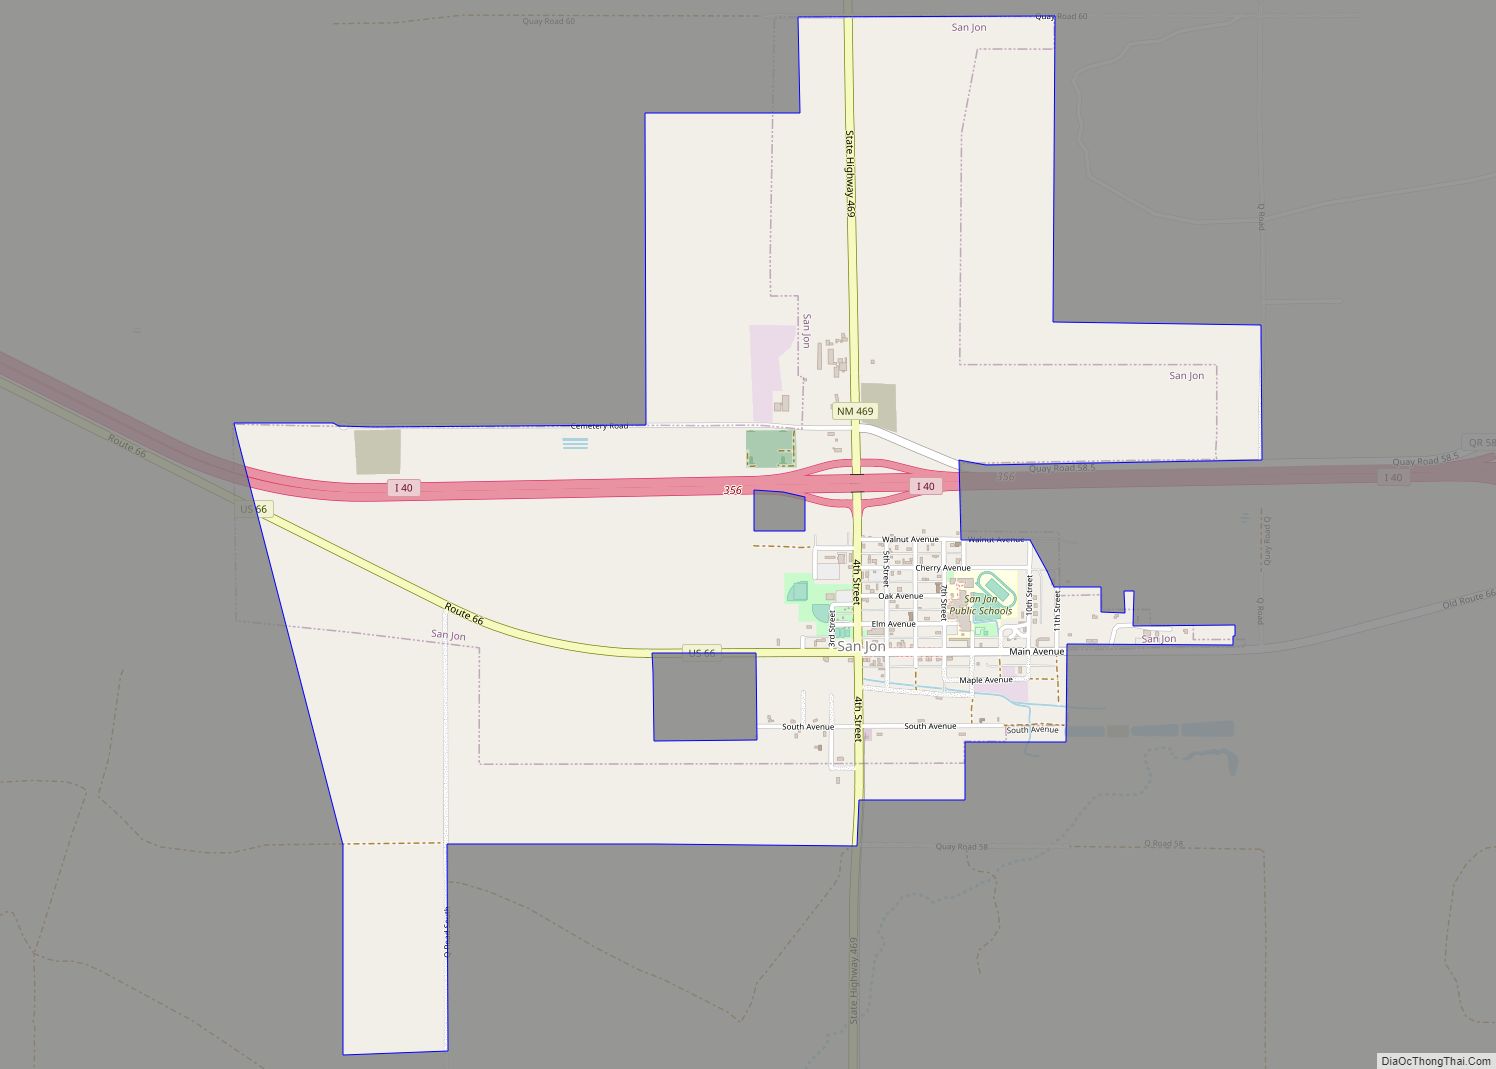 Map of San Jon village